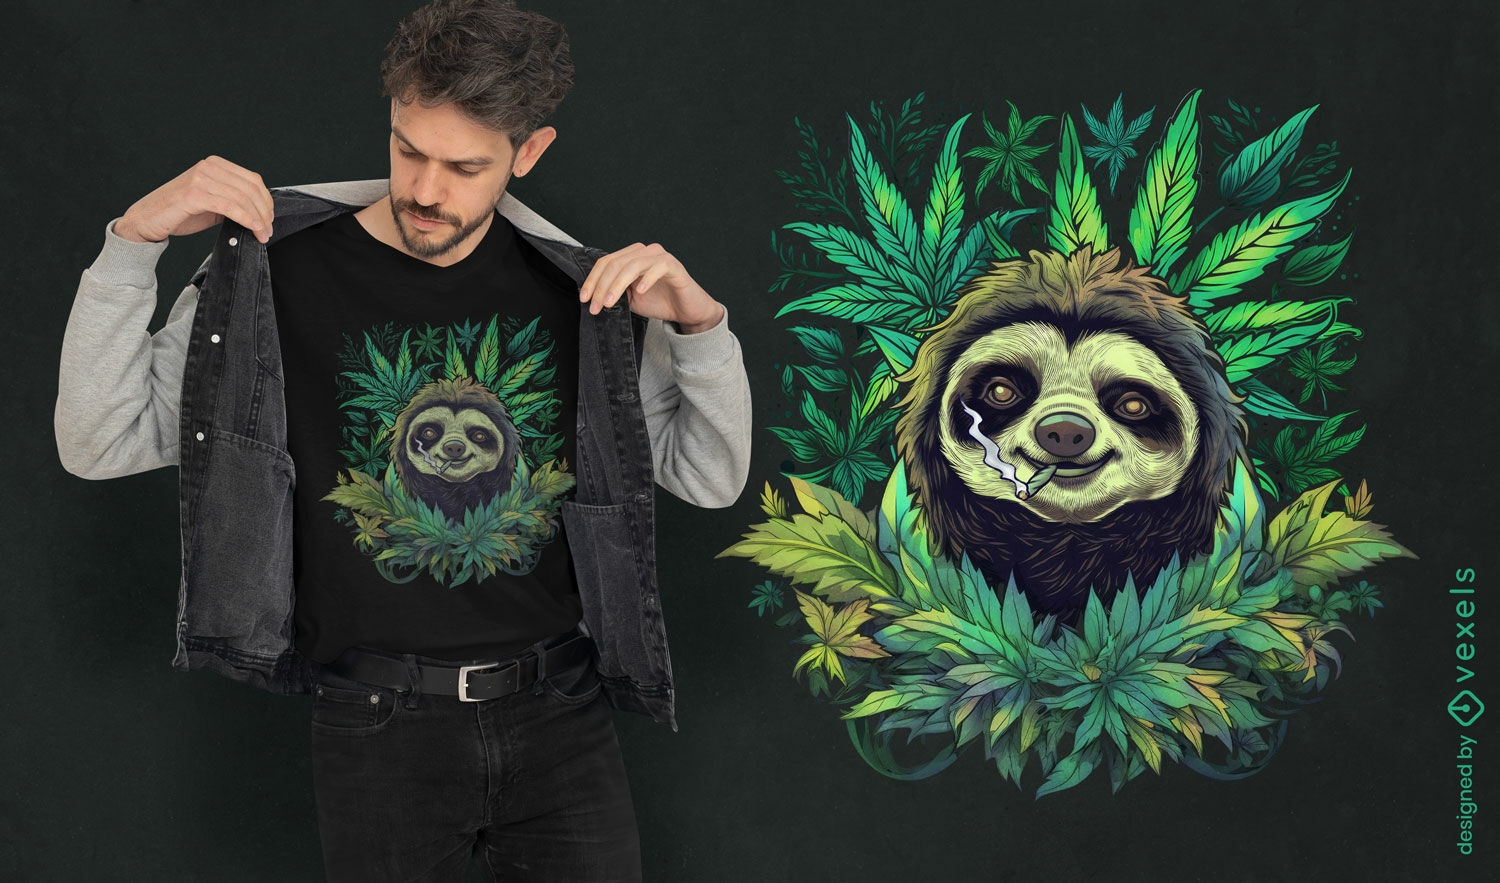 Dise?o de camiseta de perezoso de cannabis.